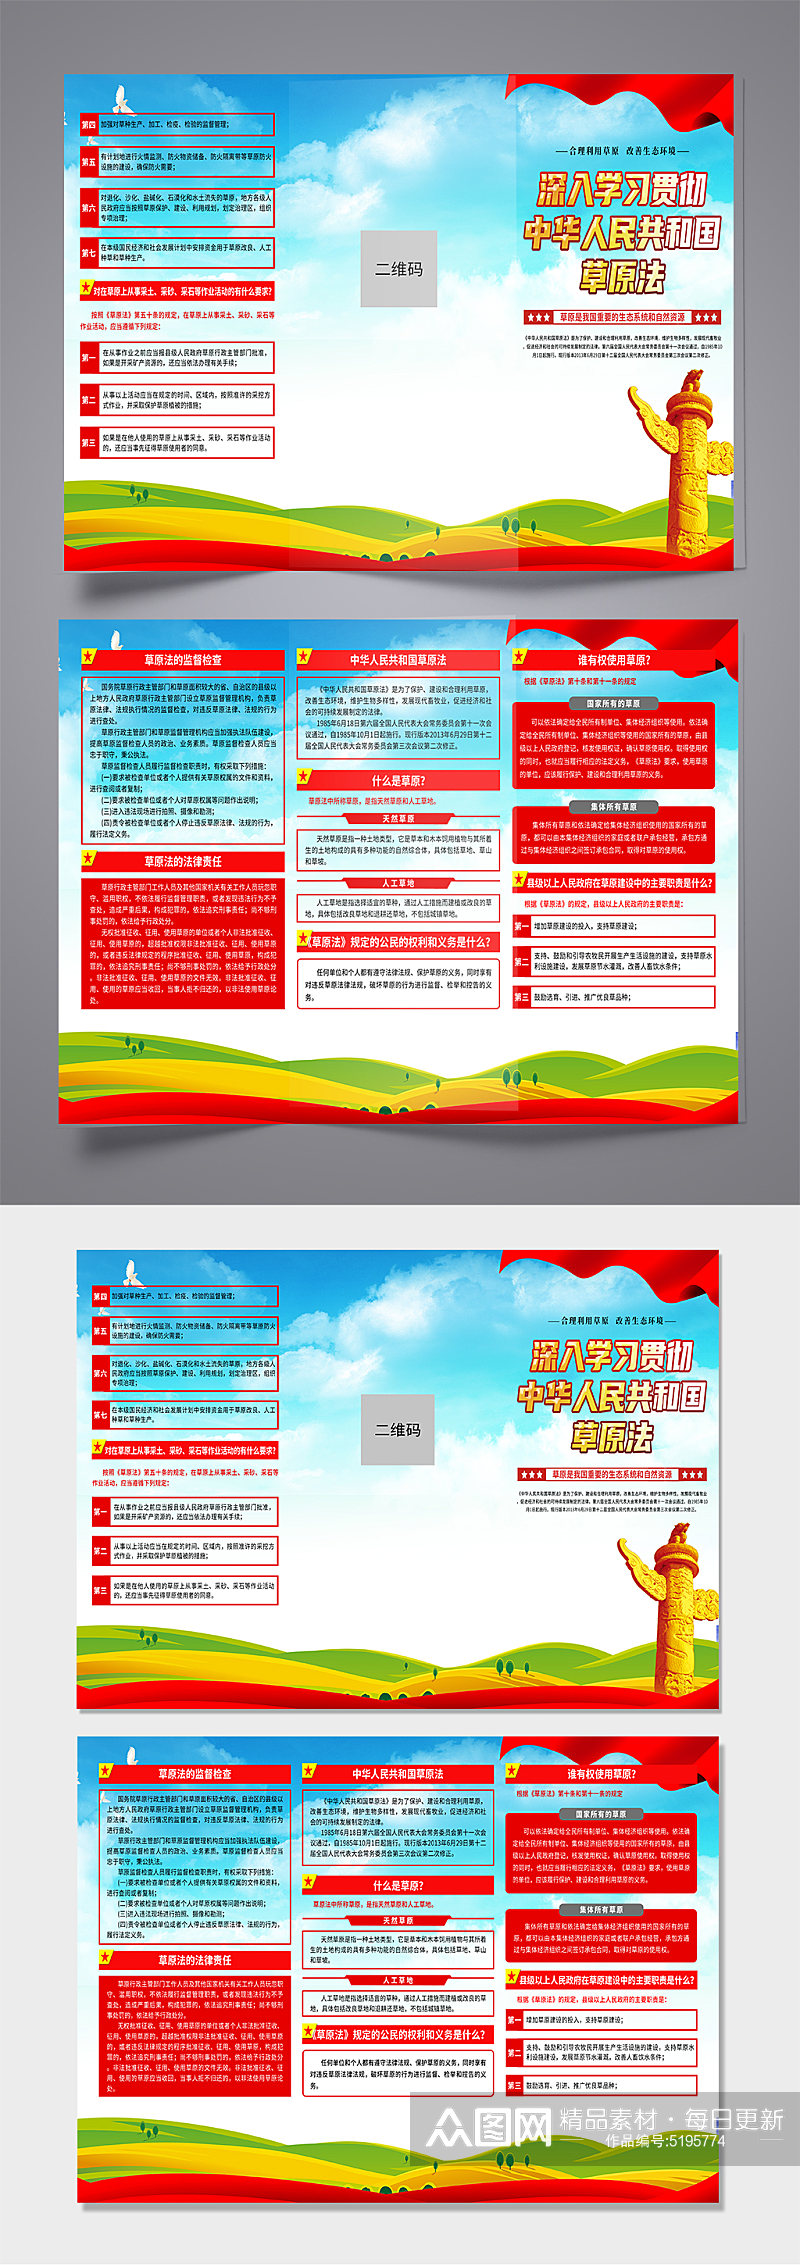 中华人民共和国草原法党建折页素材